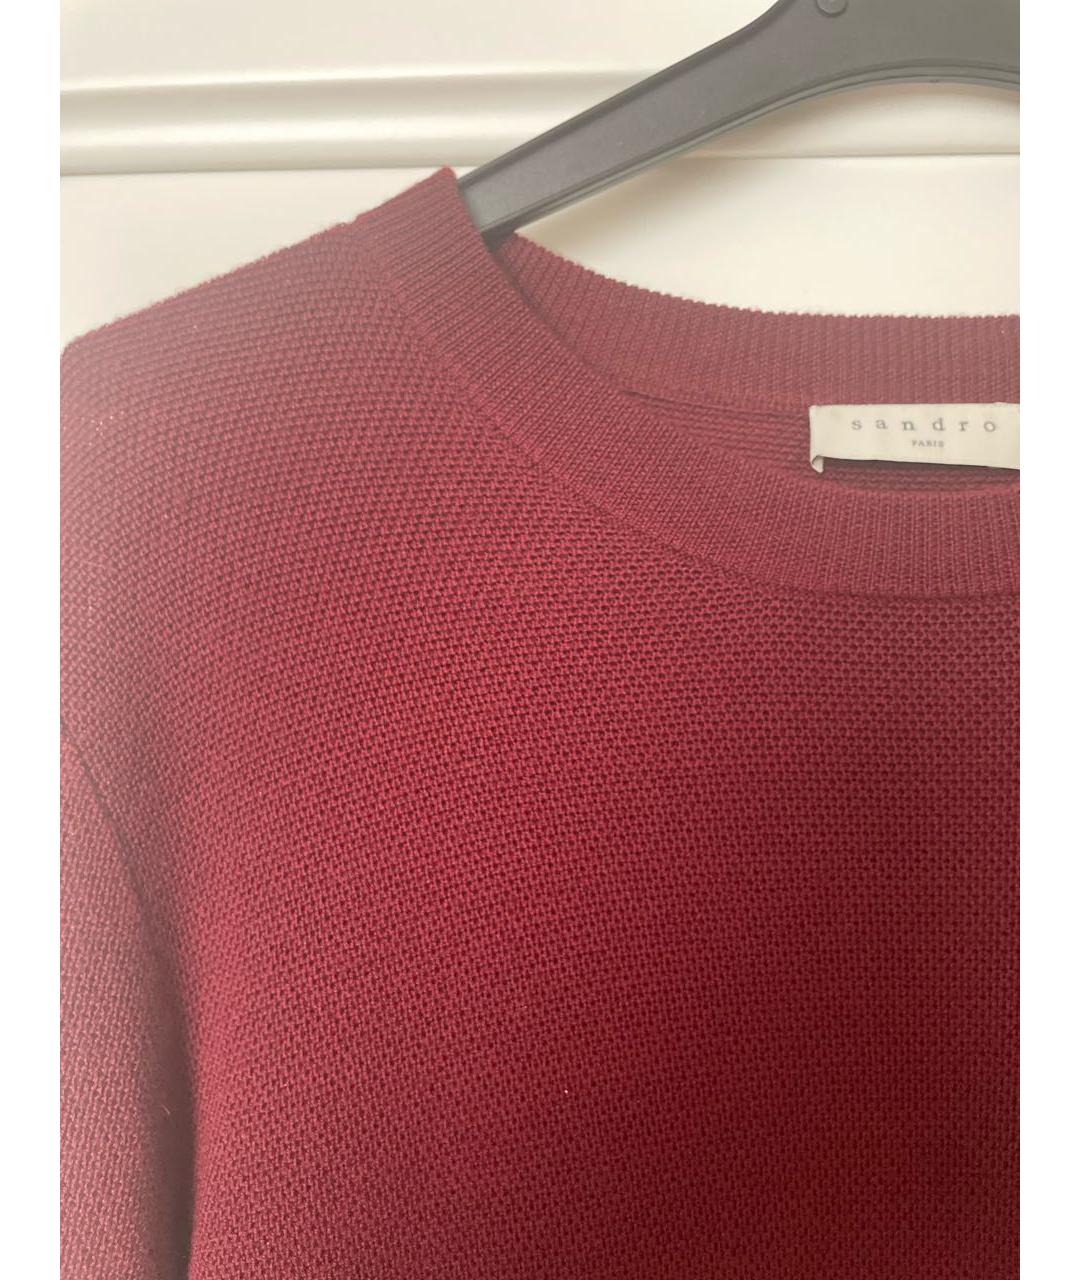 SANDRO Бордовый шерстяной джемпер / свитер, фото 4